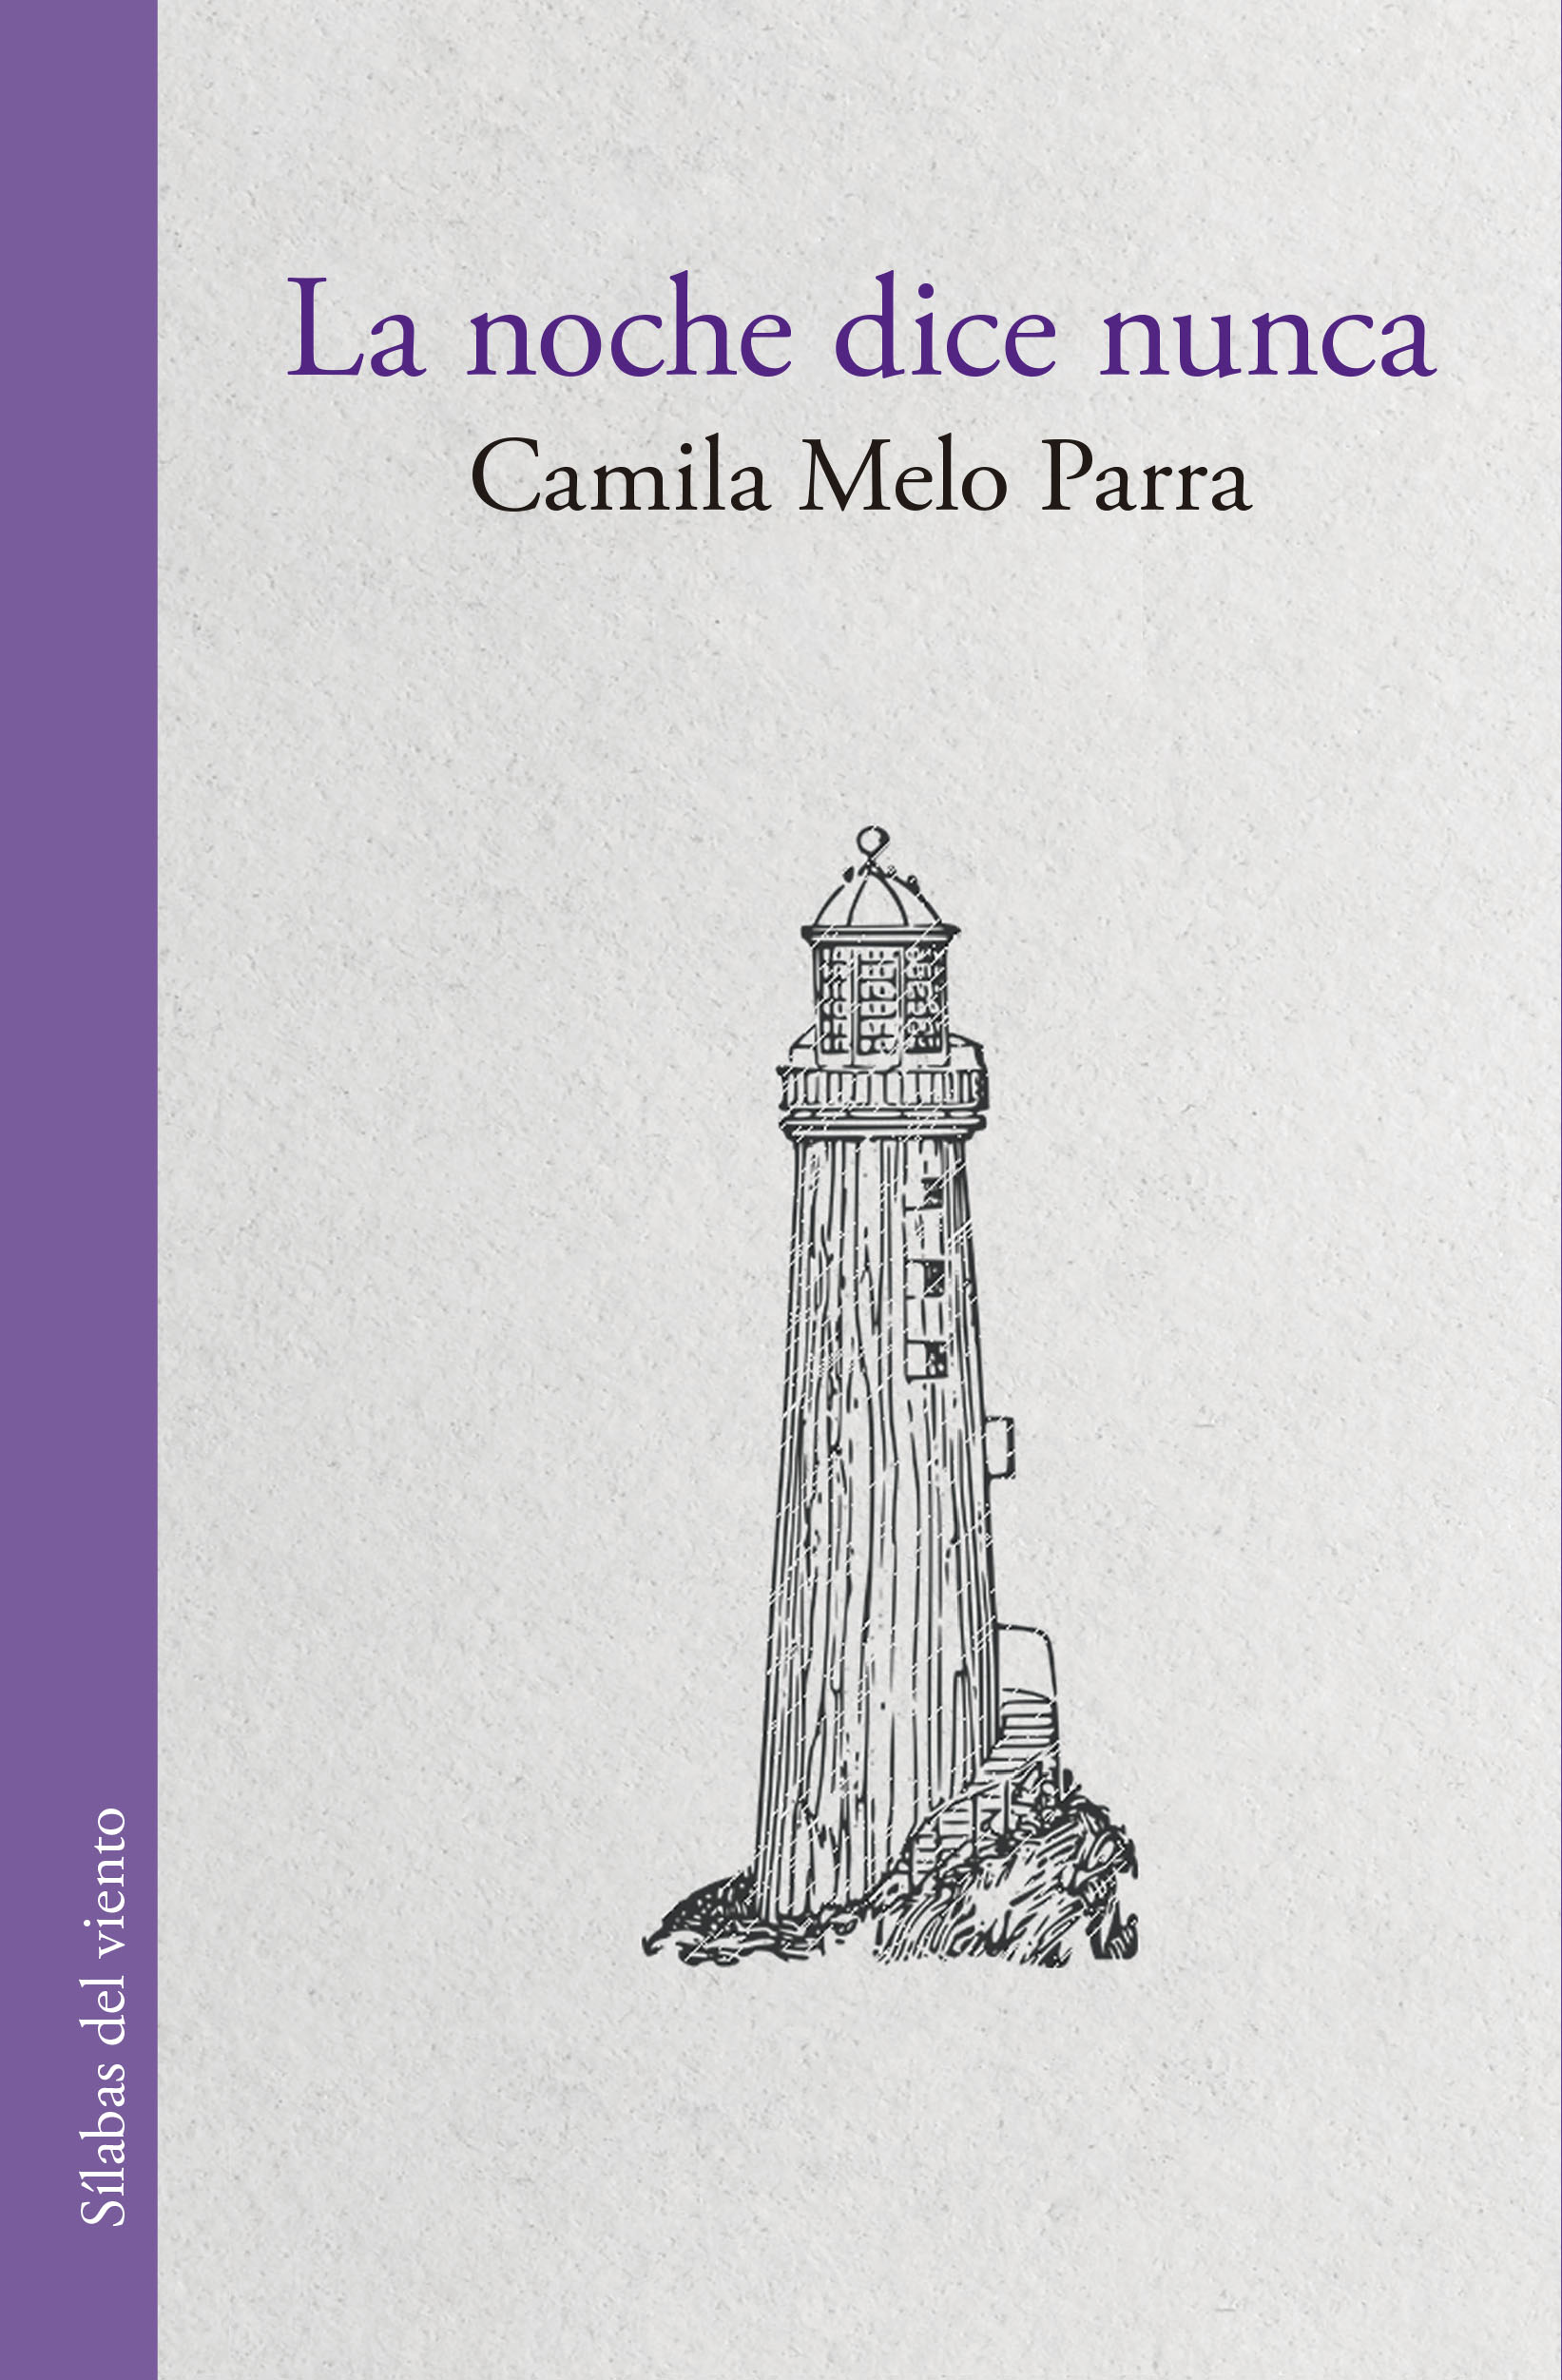 Portada del libro "La noche dice nunca", de Camila Melo. (Sílaba Editores).